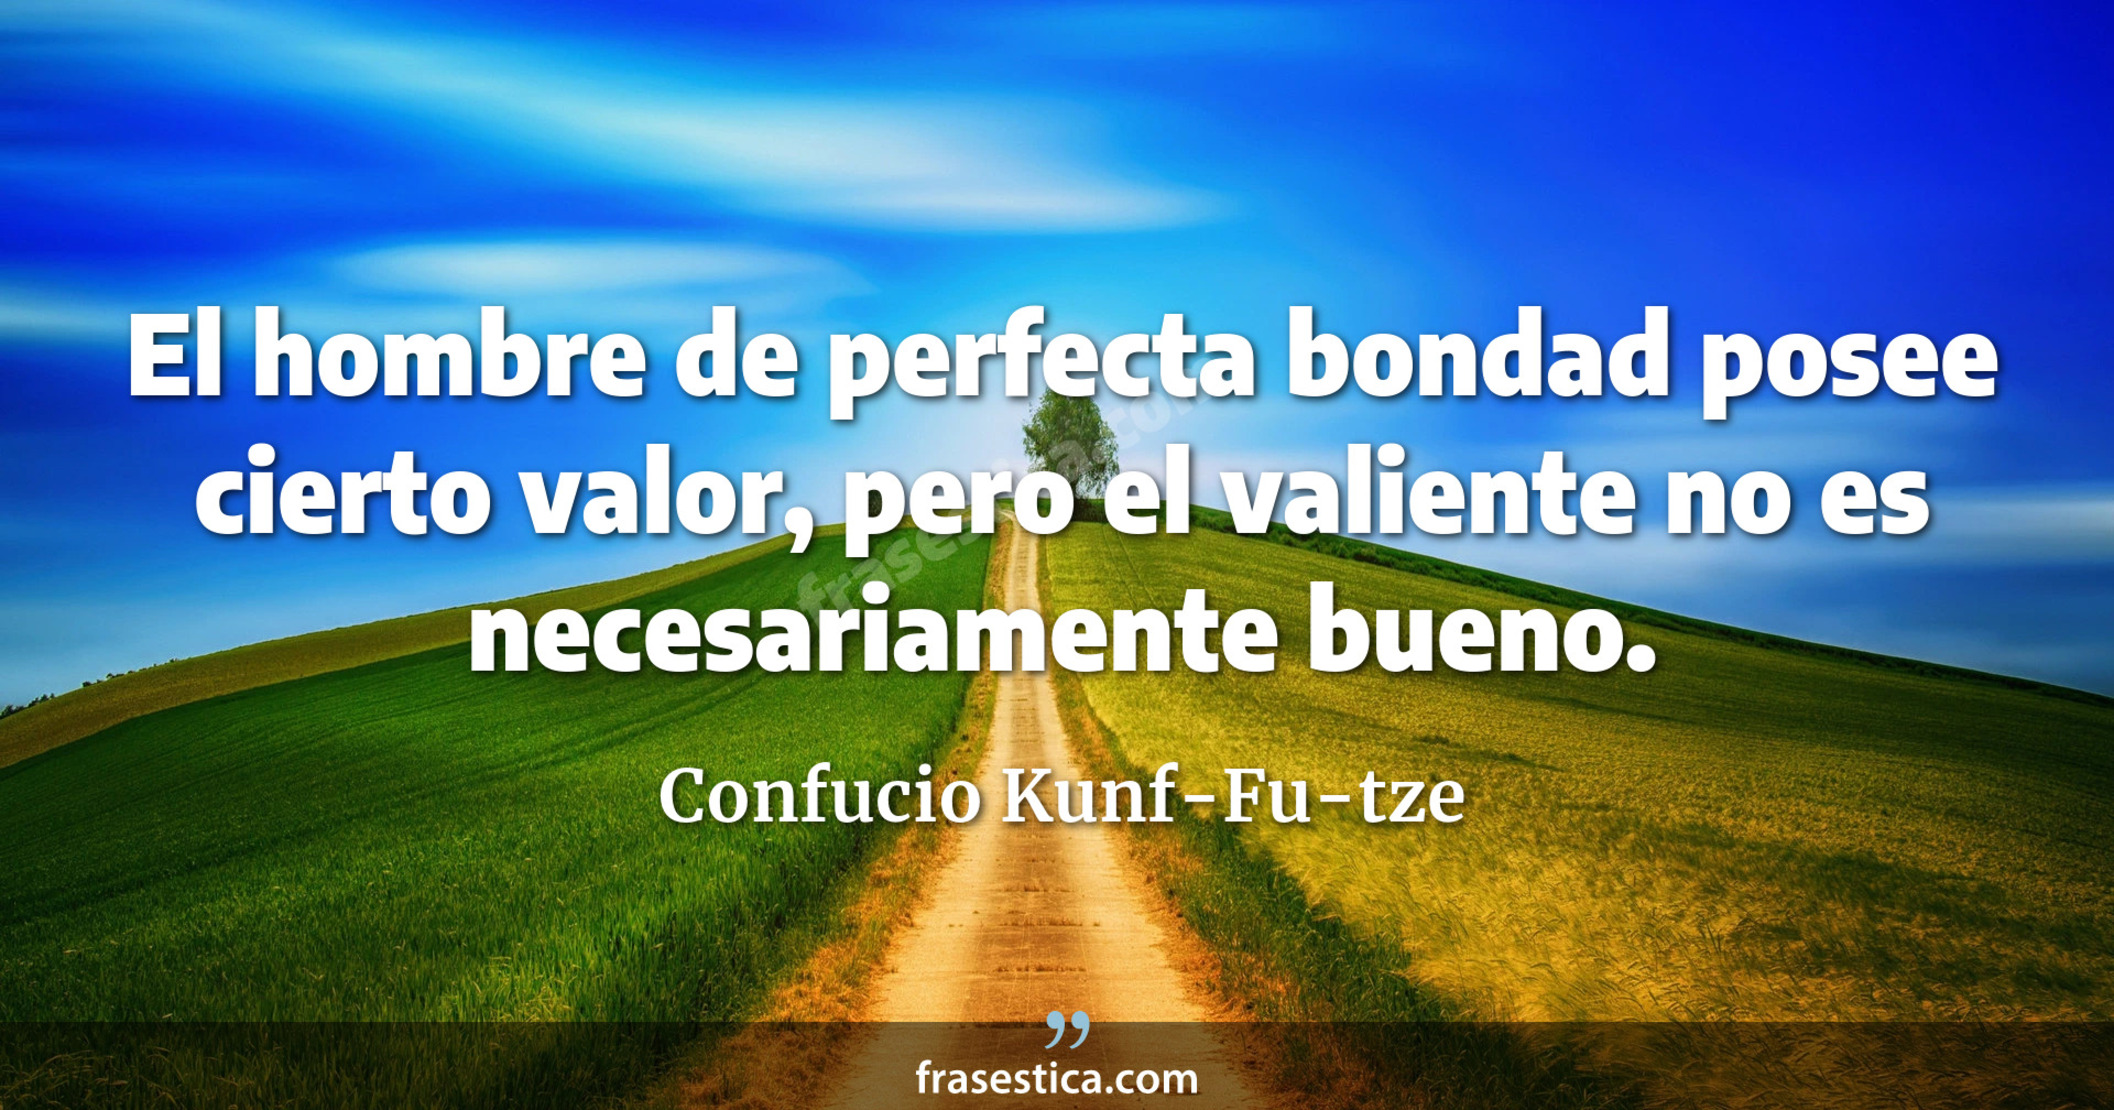 El hombre de perfecta bondad posee cierto valor, pero el valiente no es necesariamente bueno. - Confucio Kunf-Fu-tze